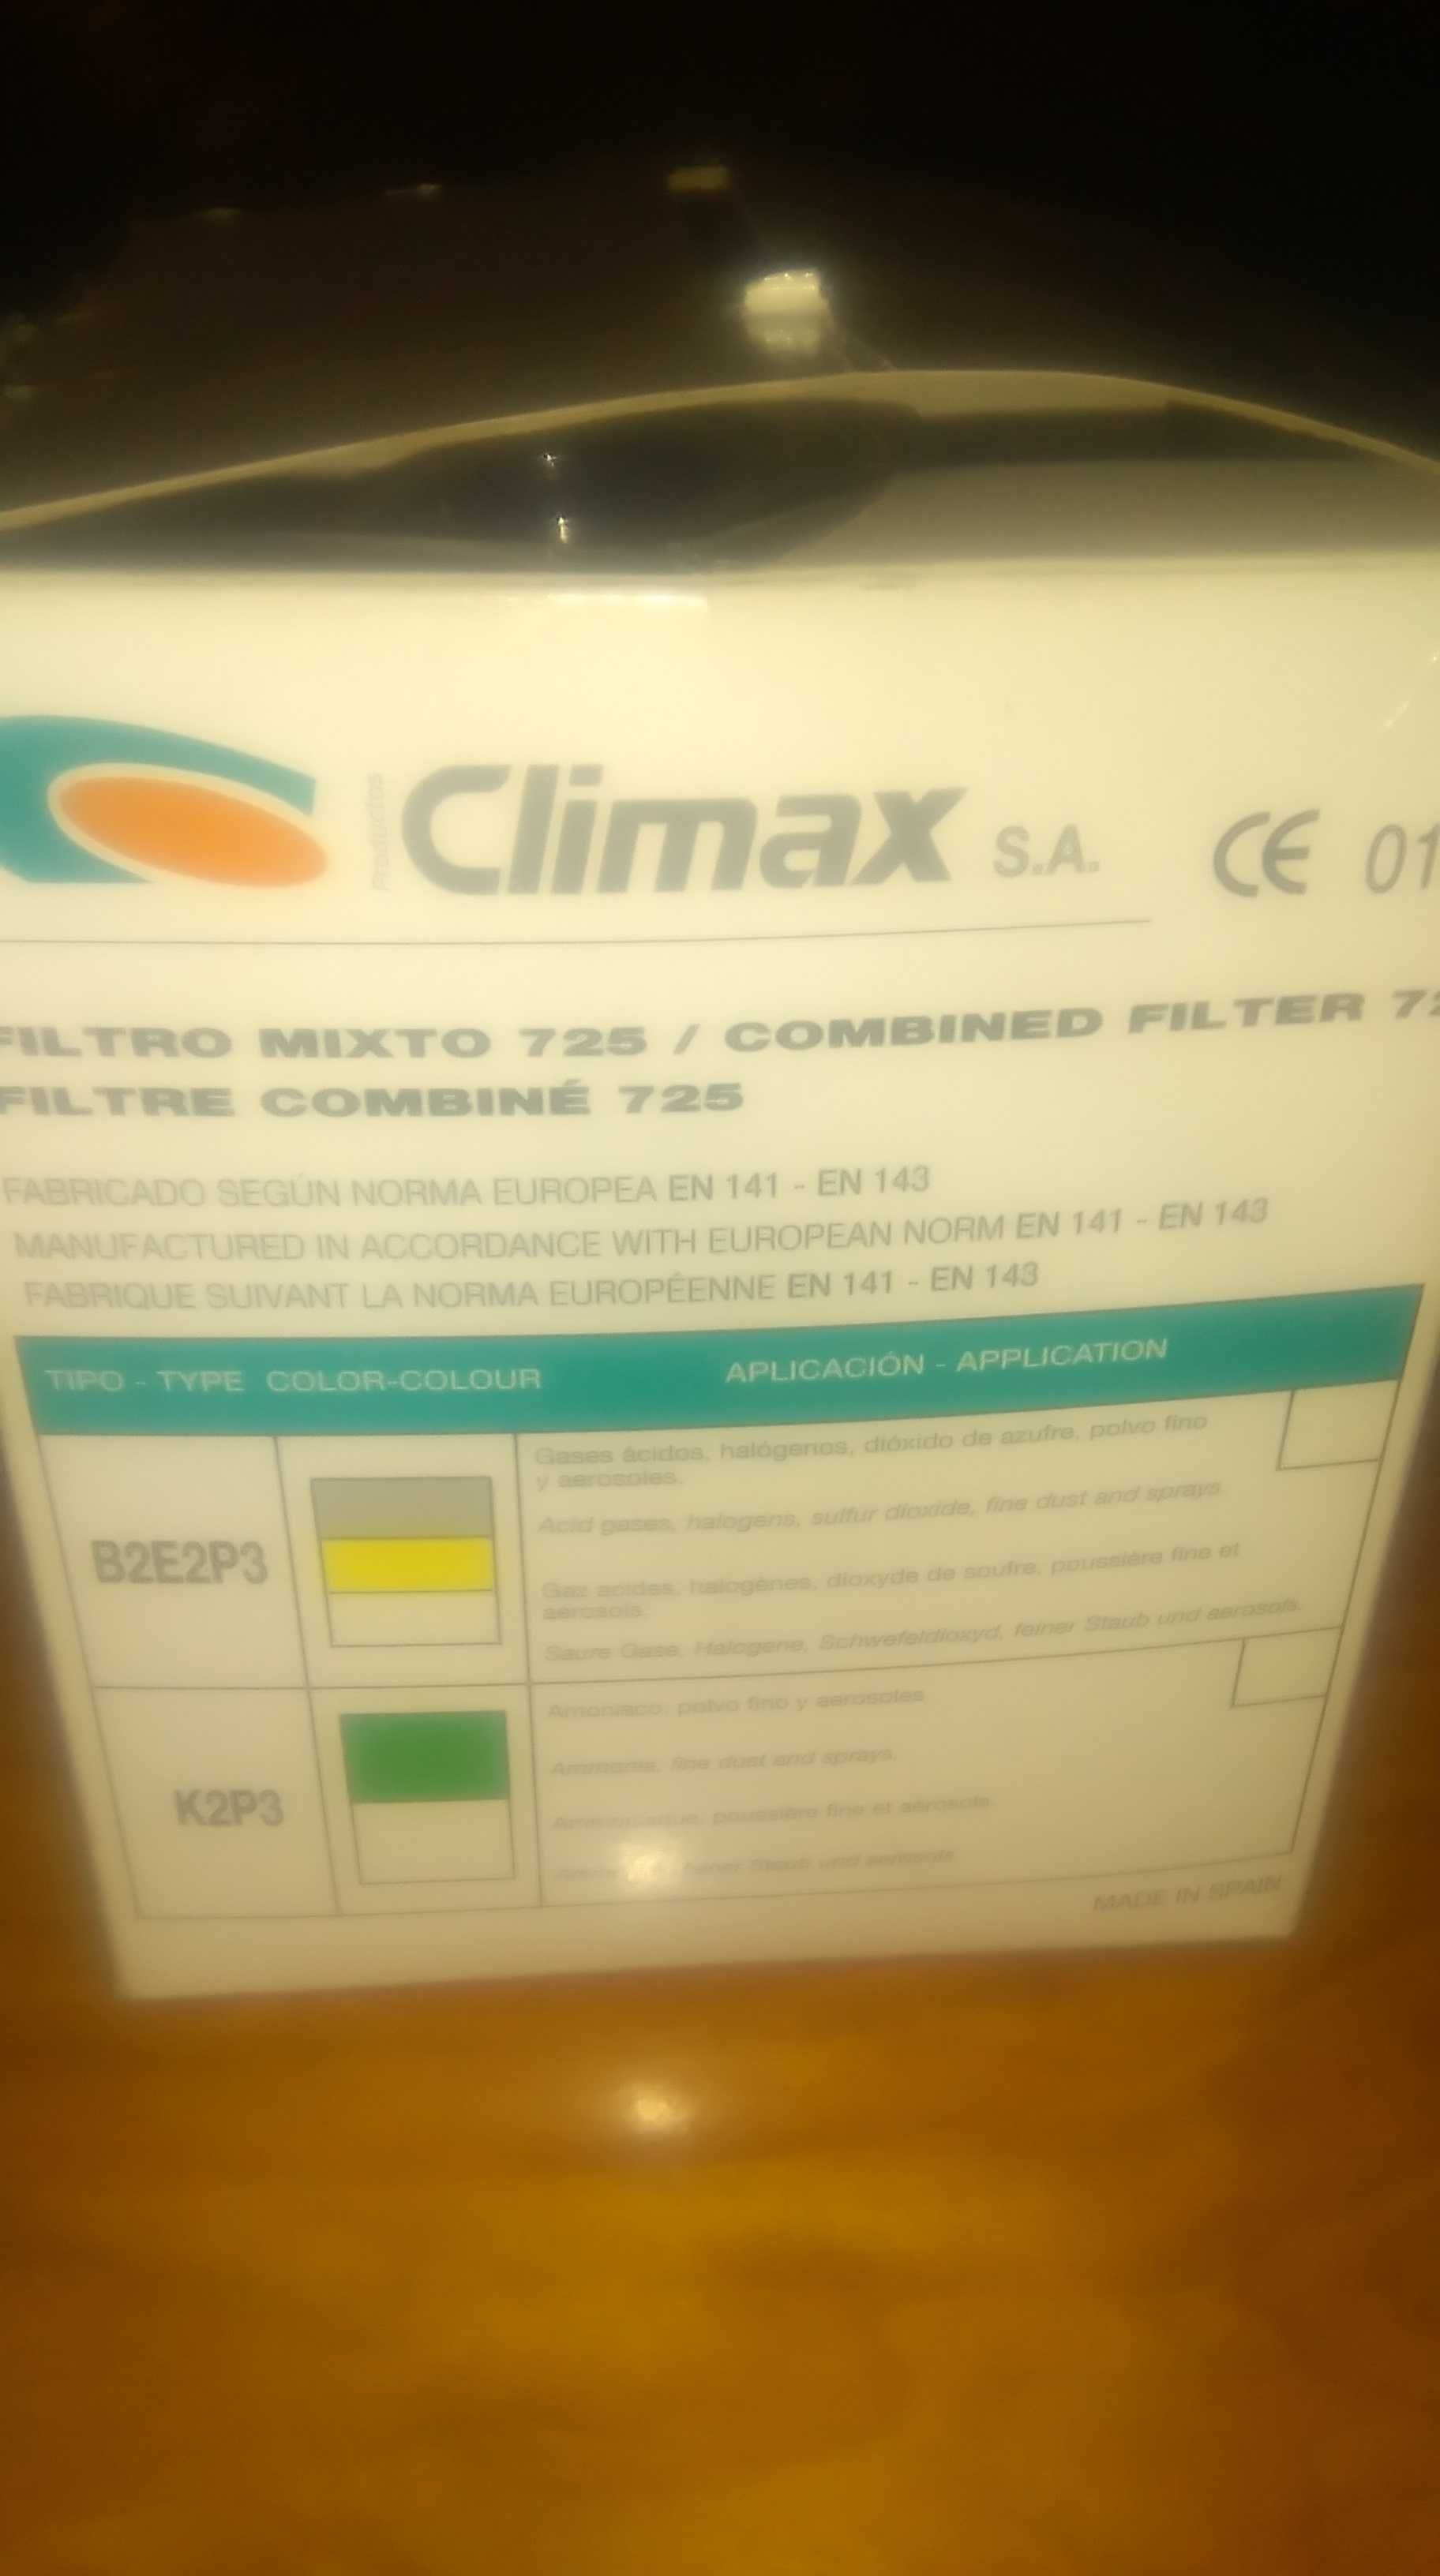 Climax filtro 725